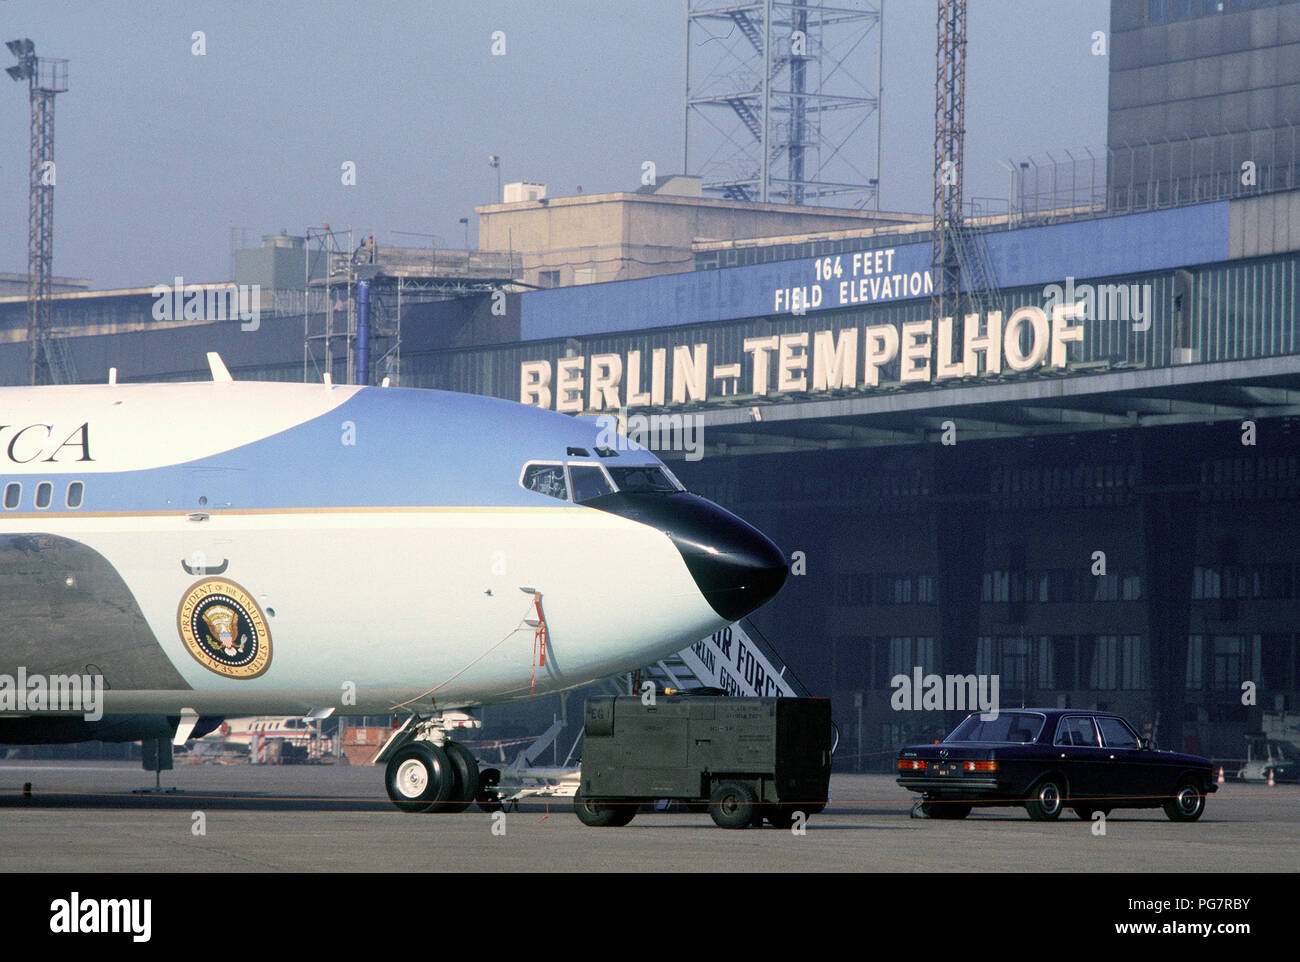 Air Force One, das VC-137 C Stratoliner Flugzeugen verwendet werden, um den Präsidenten zu Transport, sitzt in einem abgesperrten Bereich in der Nähe des Terminalgebäudes in Tempelhof Zentral Flughafen während Präsident Reagans Besuch in Berlin. Stockfoto